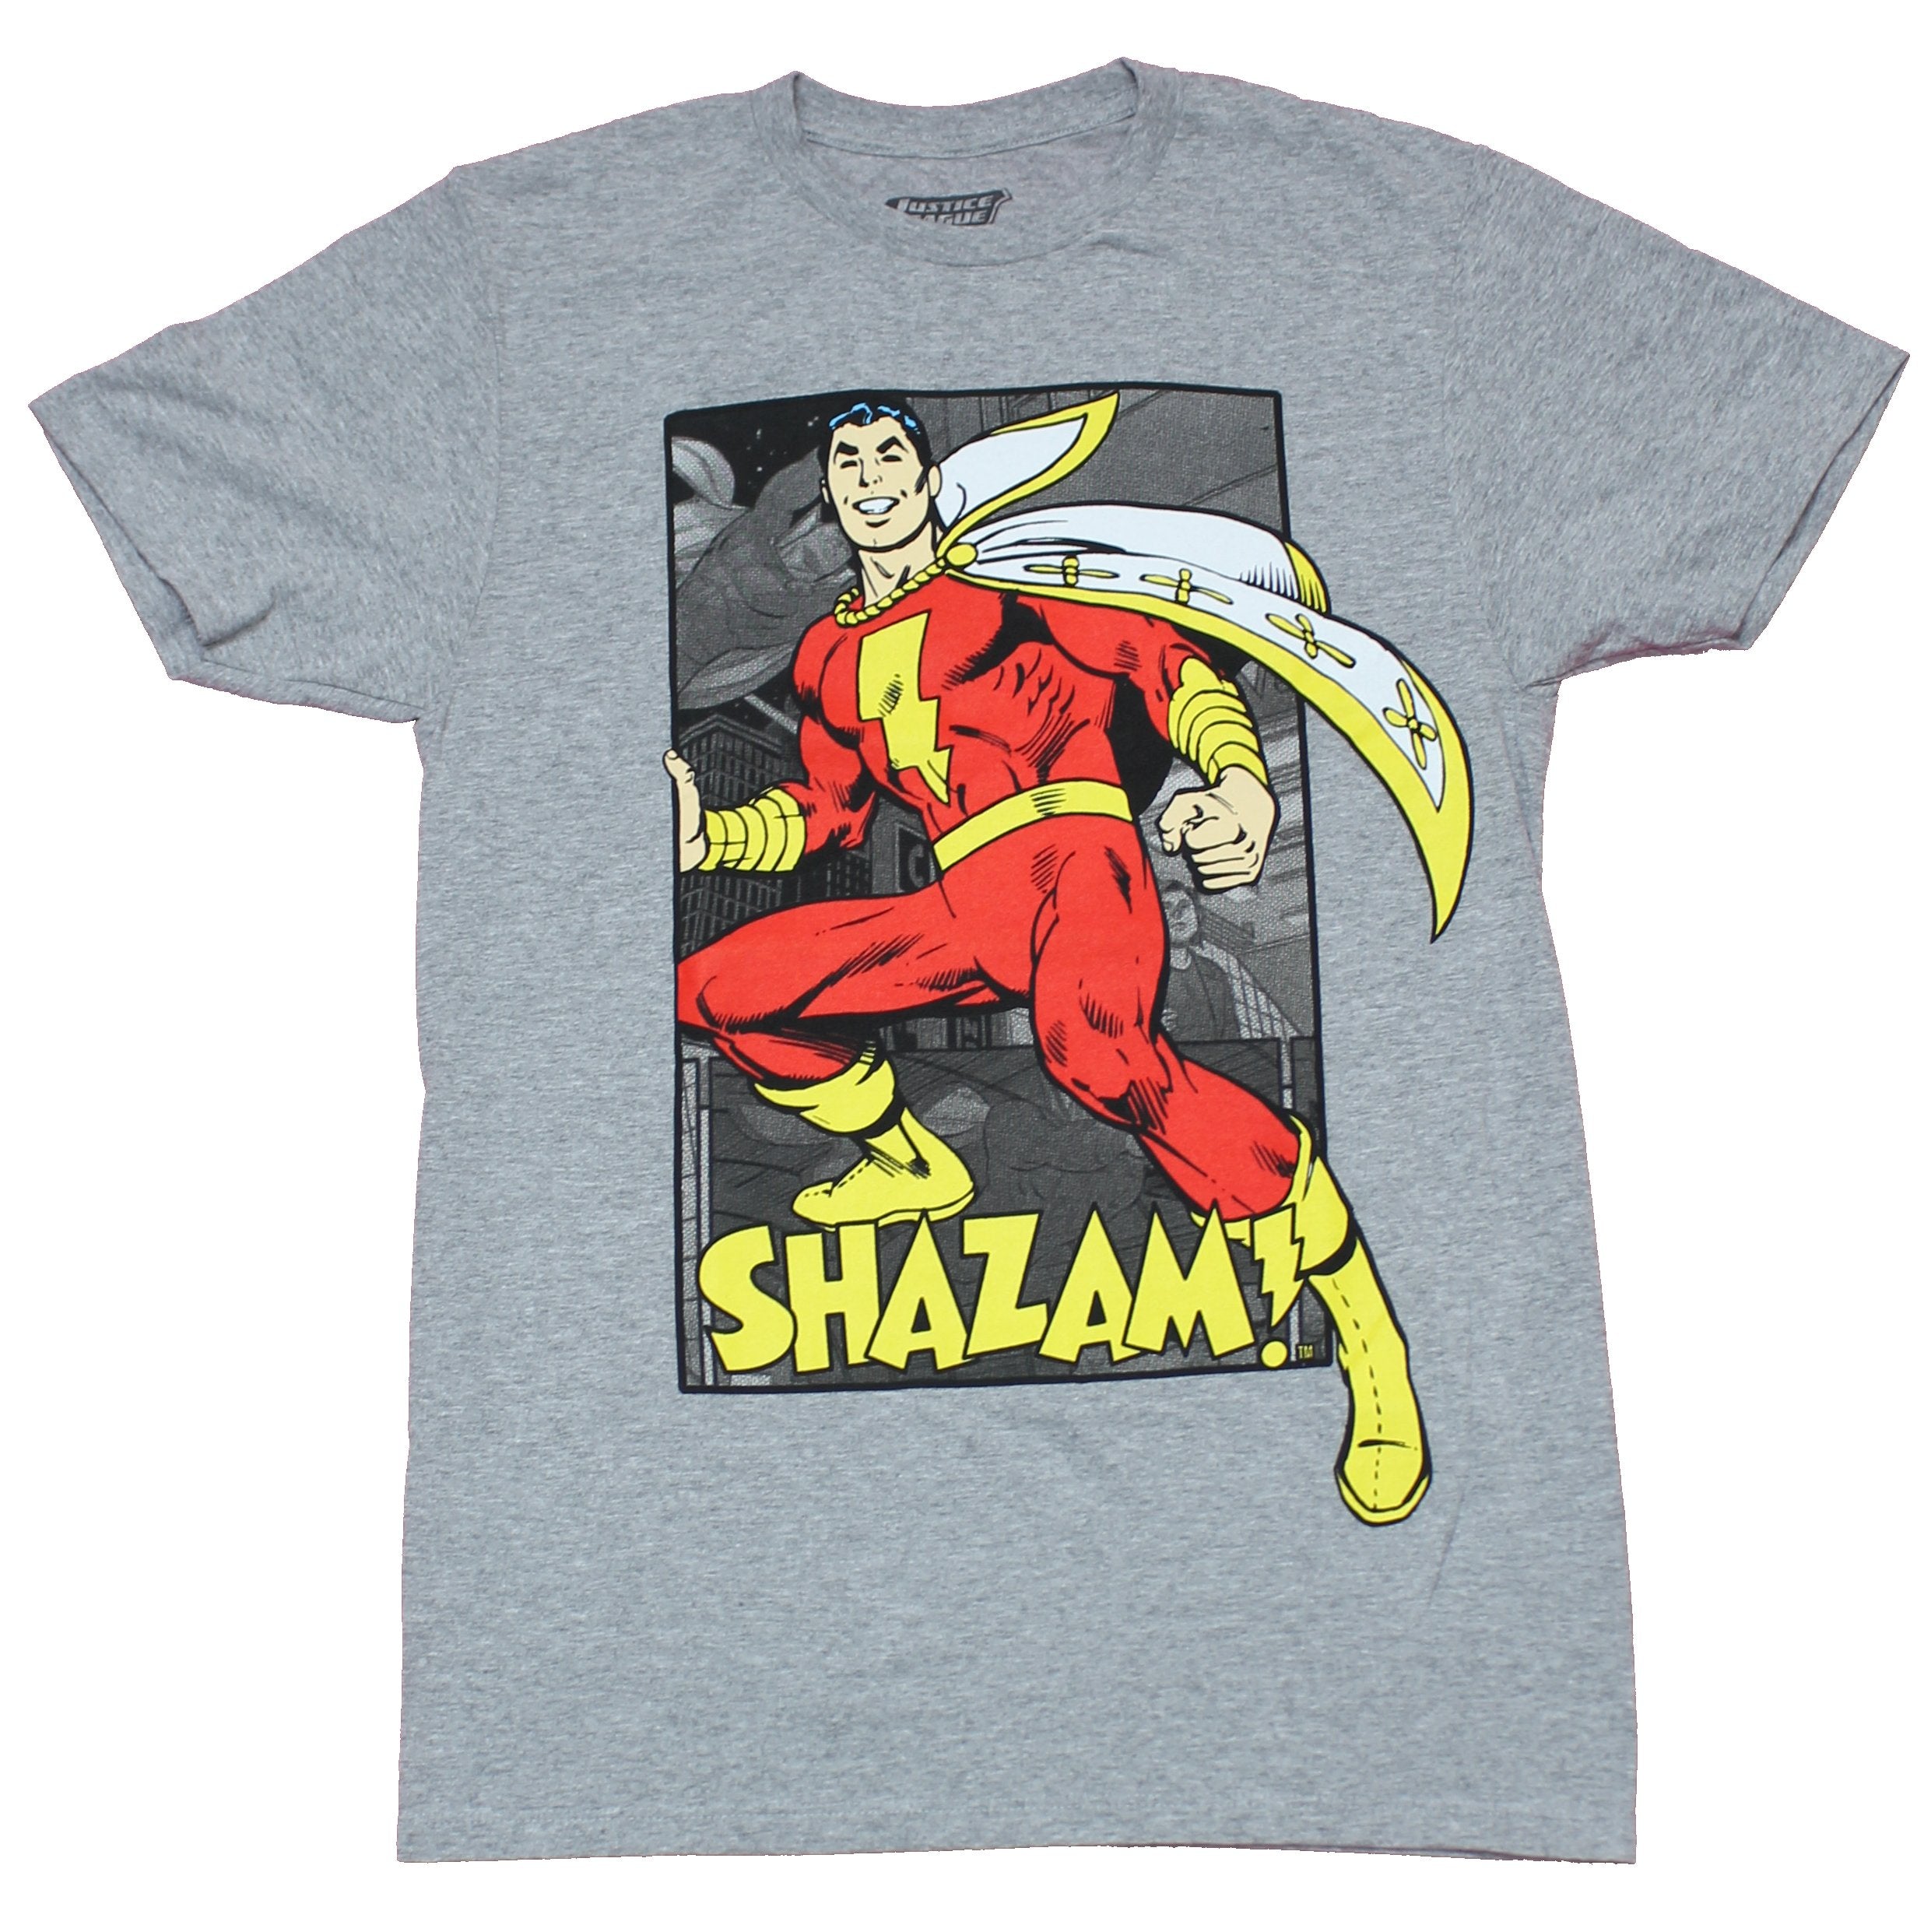 Observatory jeg behøver Erklæring Shazam Mens T-Shirt - Smiling Comic Book Pose